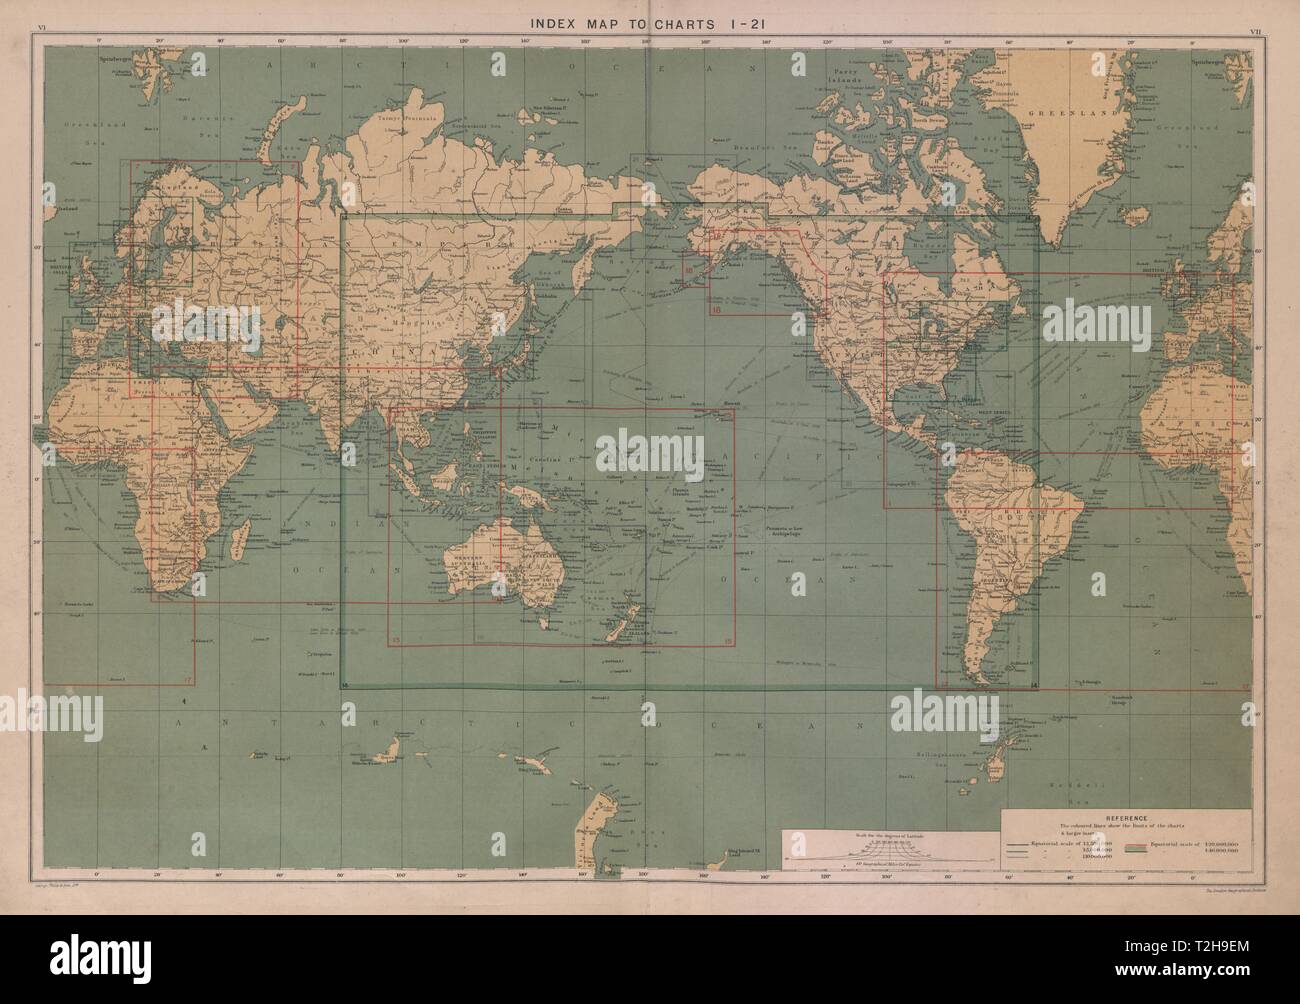 Mondo. Mappa di indice di grafici 1-21. Mondo. Grande 50x70cm 1916 antica  Foto stock - Alamy